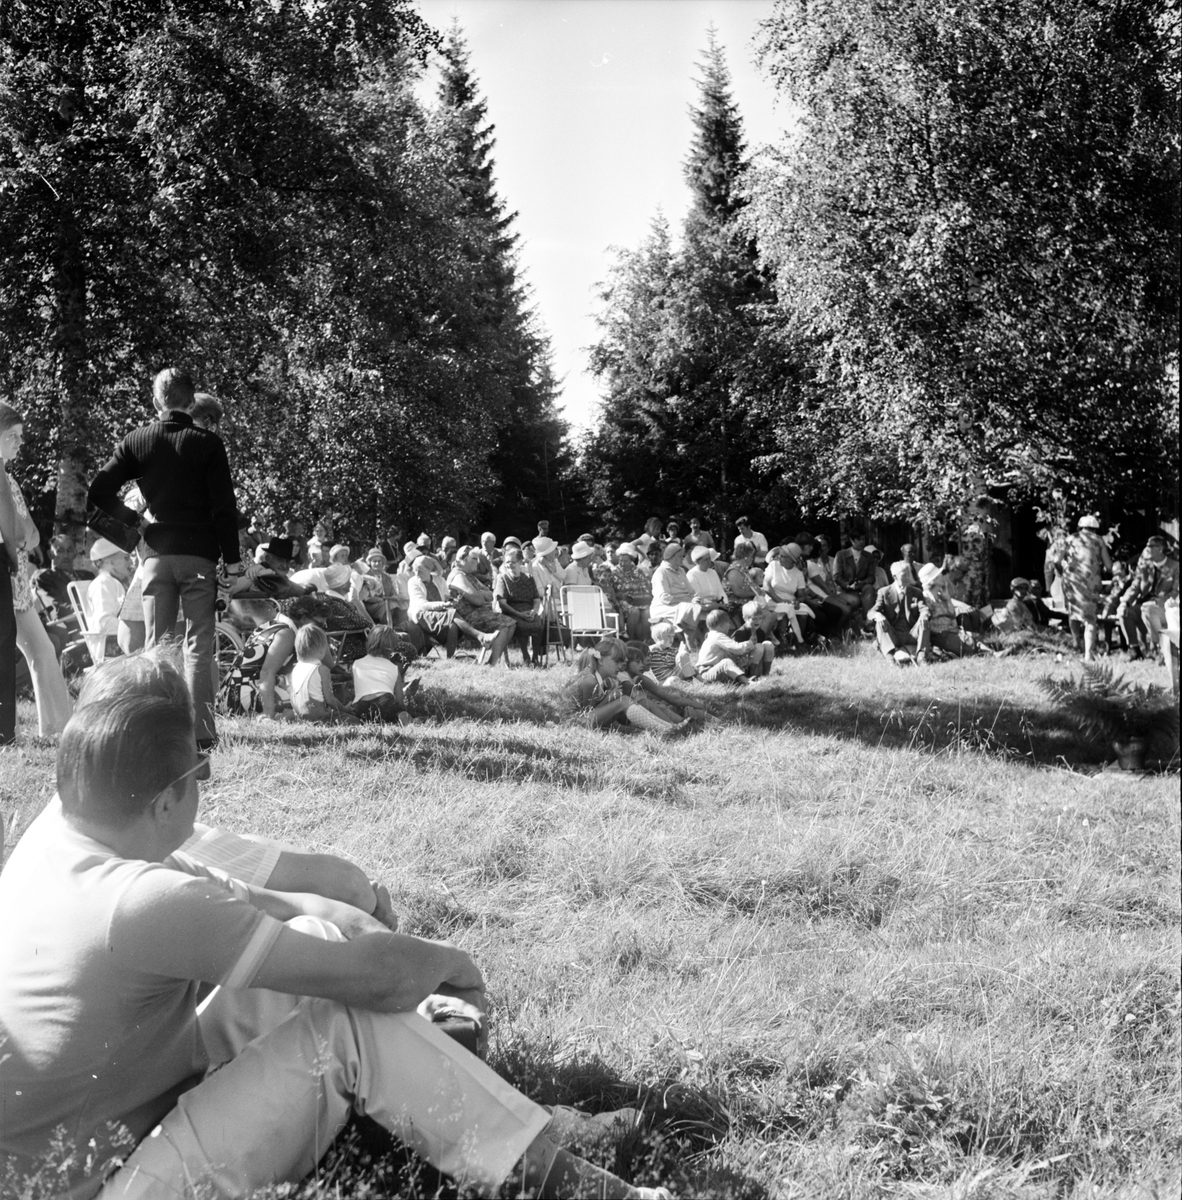 Arbrå,
Gudstjänst på Möckelåsen,
Augusti 1970